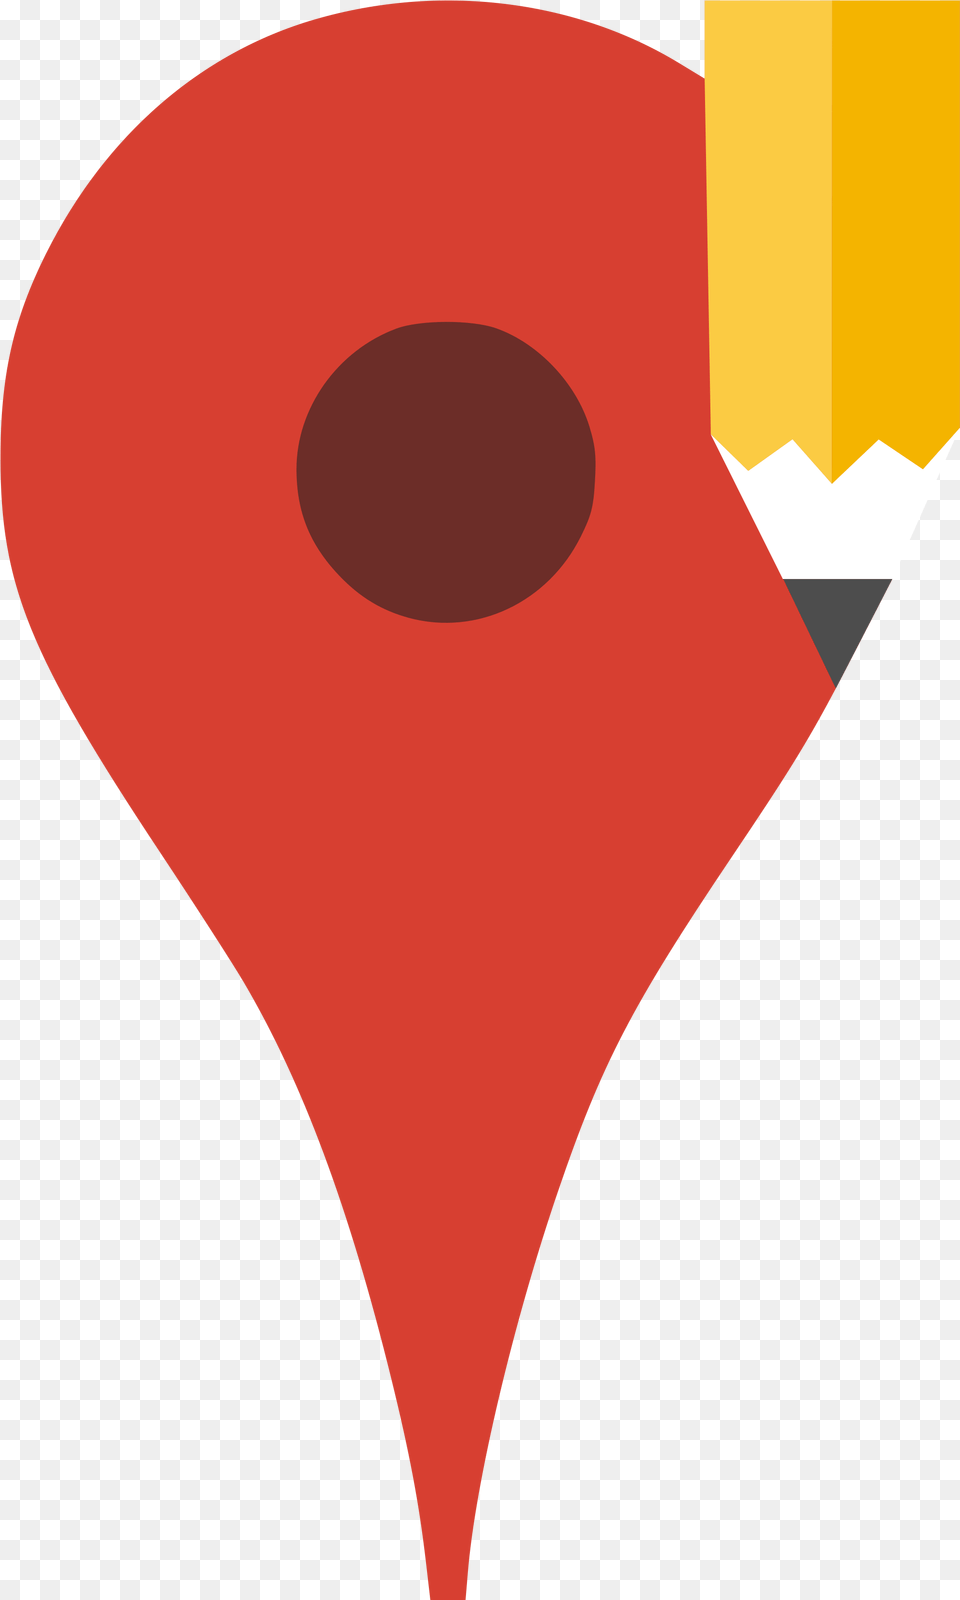 Google Map Maker Logo Google Map Maker Logo, Balloon, Heart Free Transparent Png